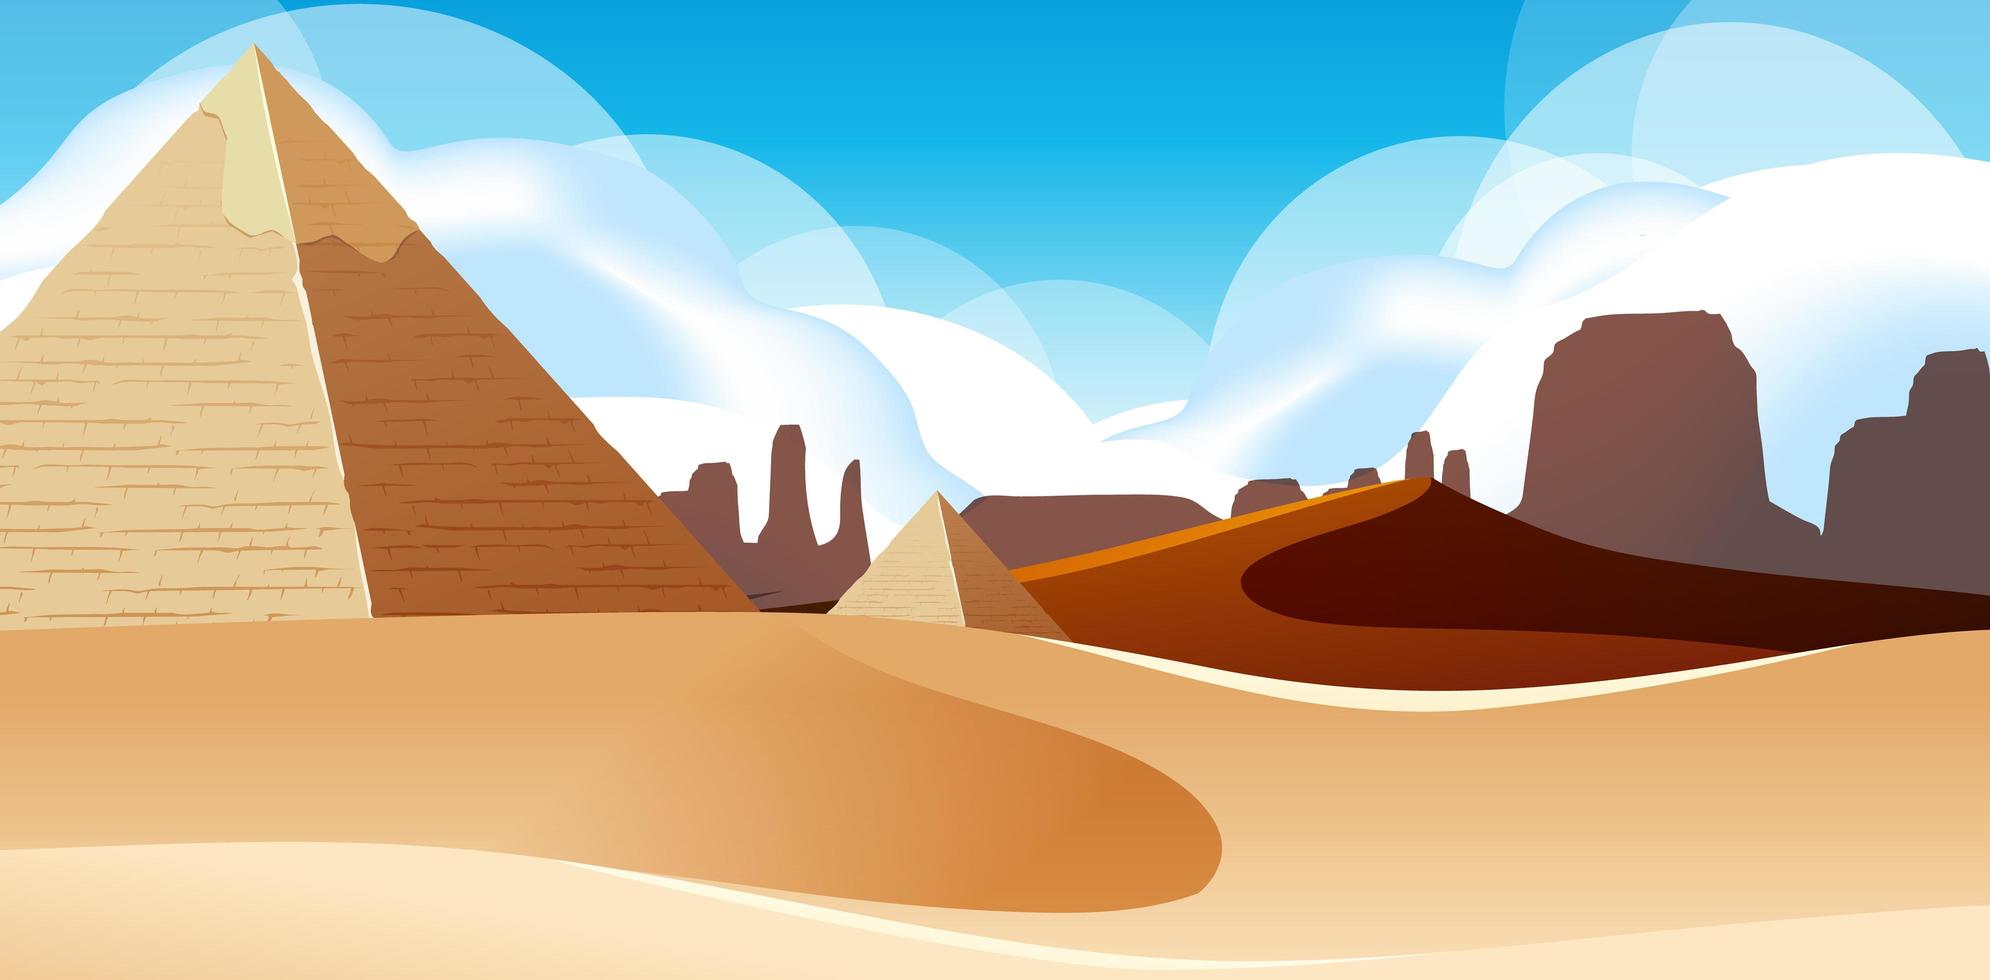 Wild Desert Landscape at Daytime Scene vector